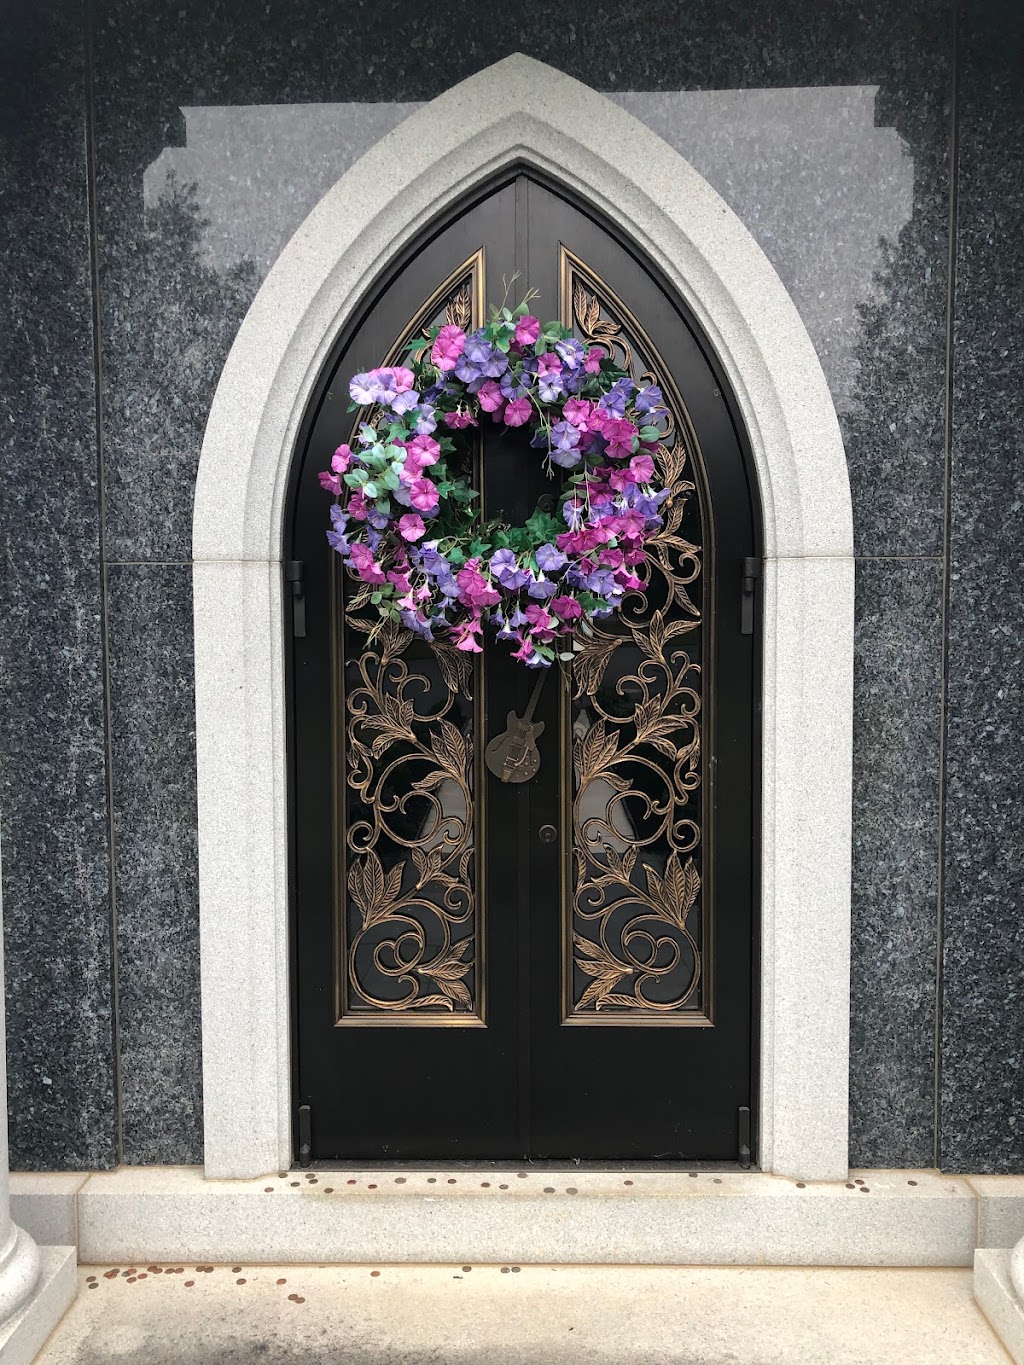 Bellerive Gardens Cemetery | 740 N Mason Rd, St. Louis, MO 63141, USA | Phone: (314) 434-3933